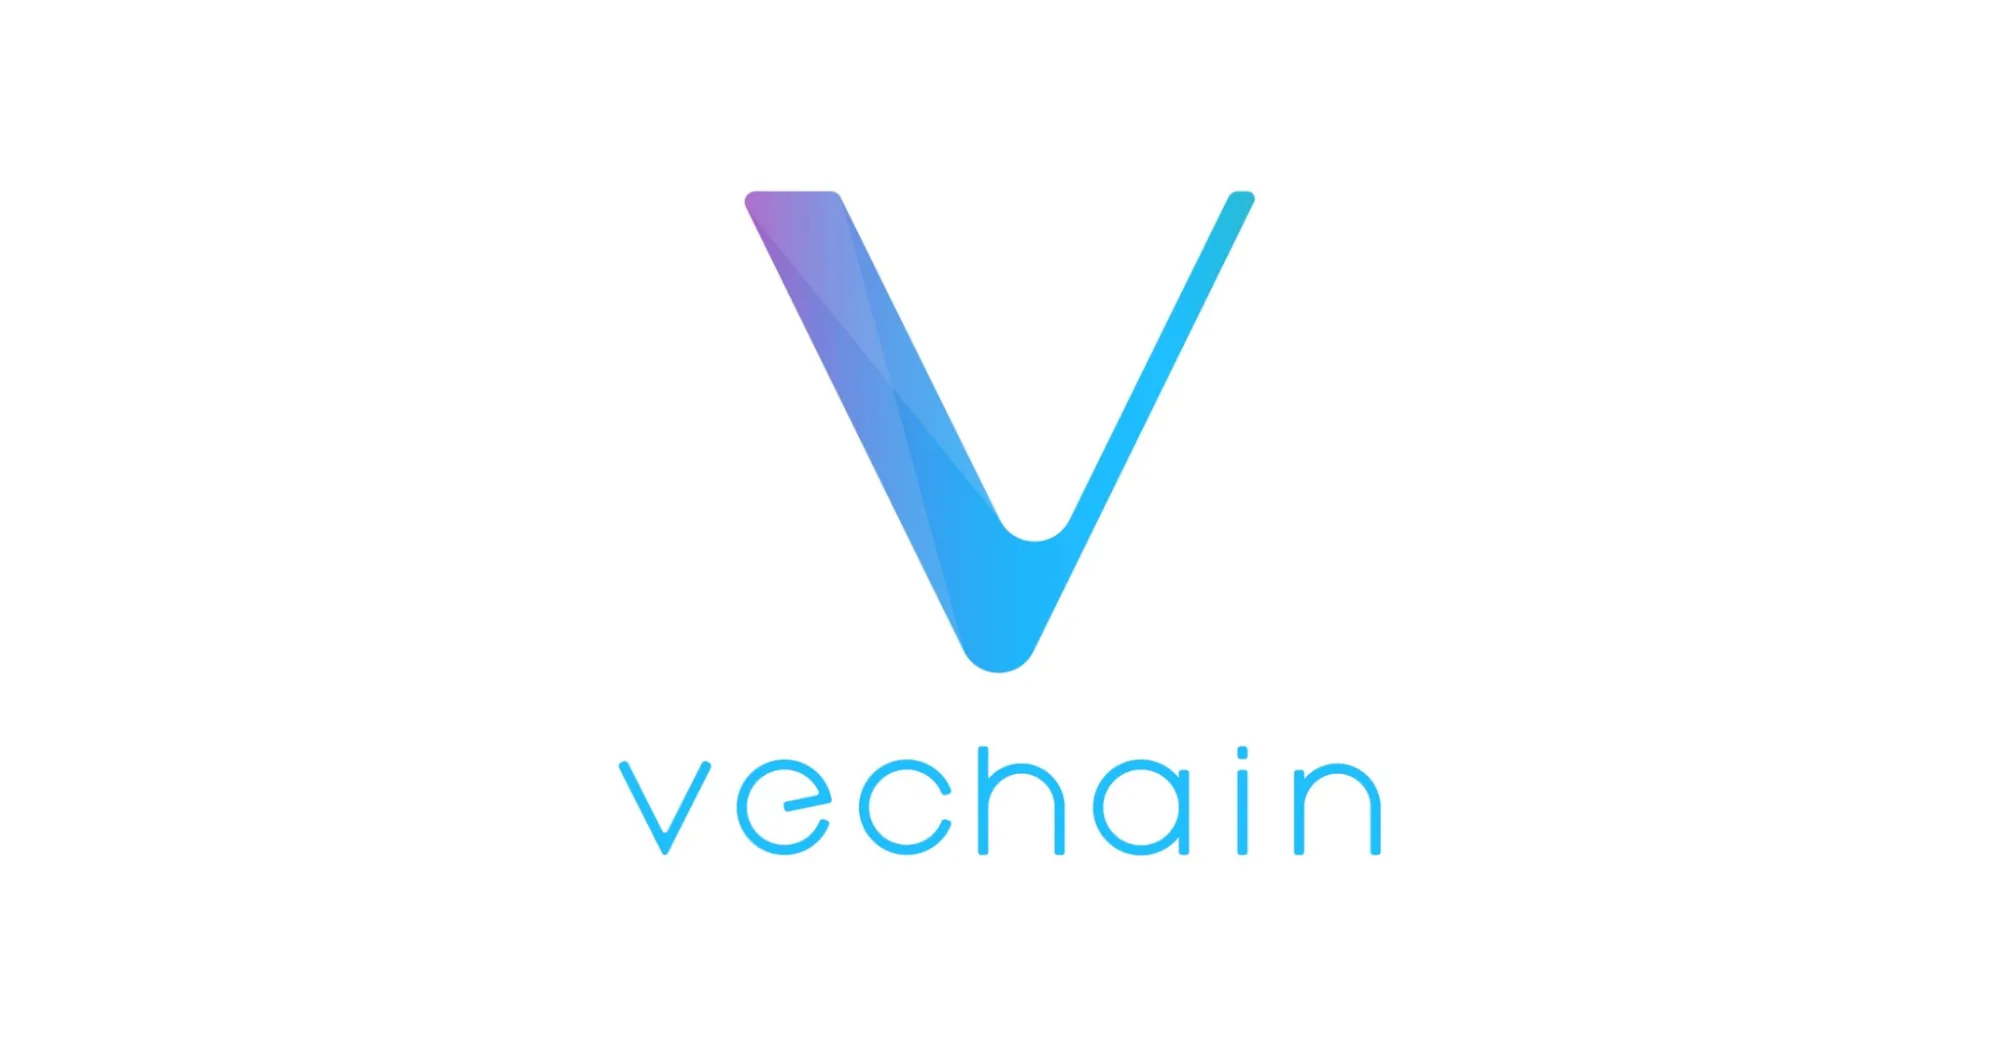 Le projet de blockchain Vechain